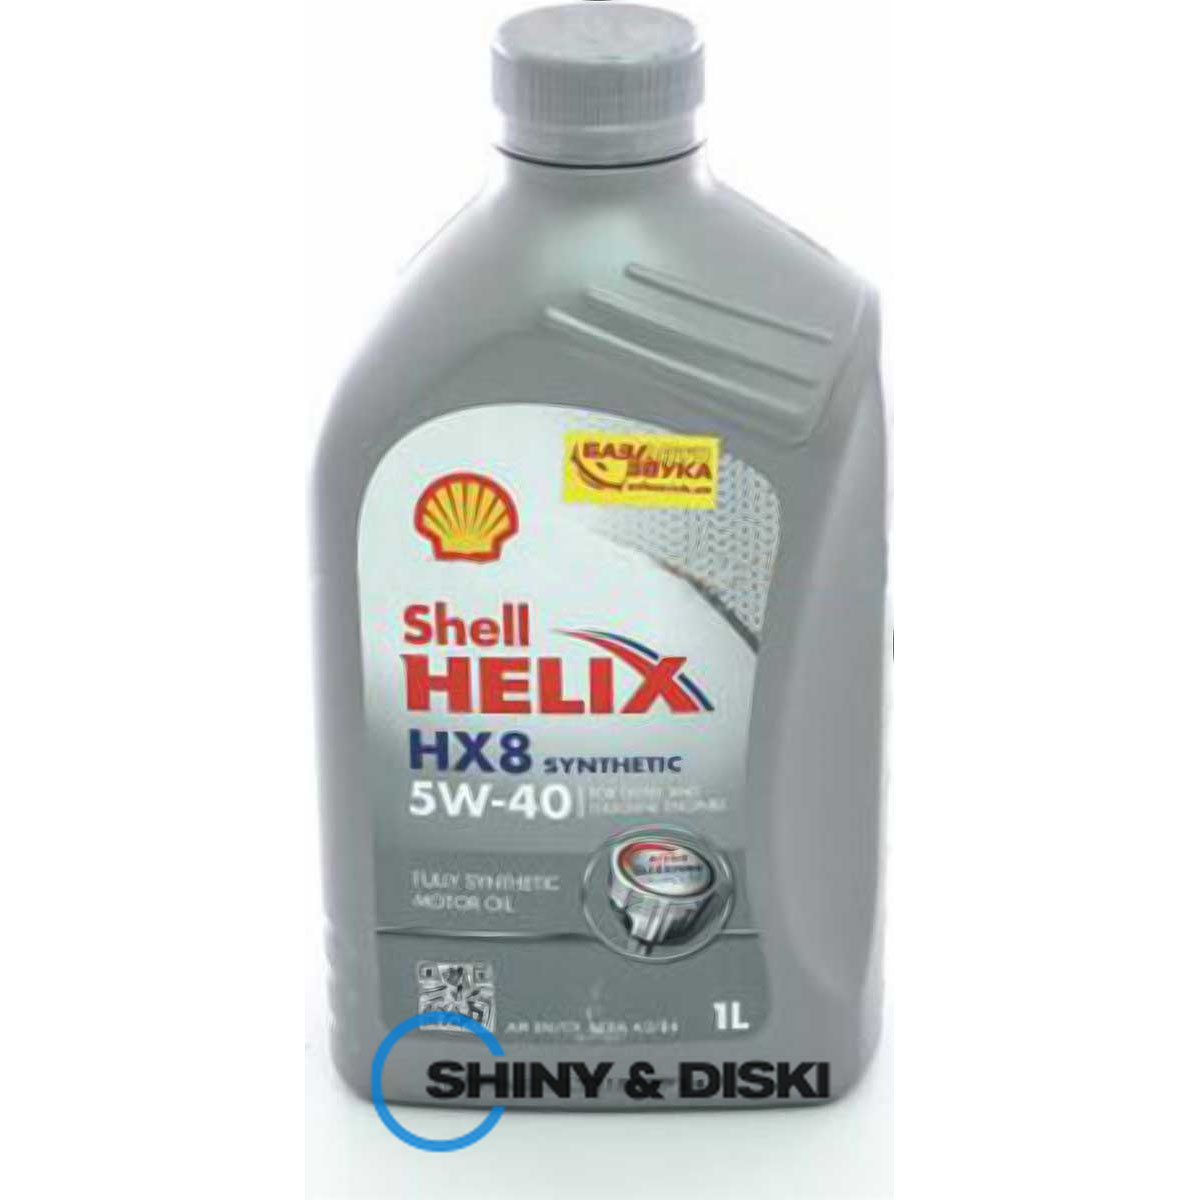 shell helix hx8